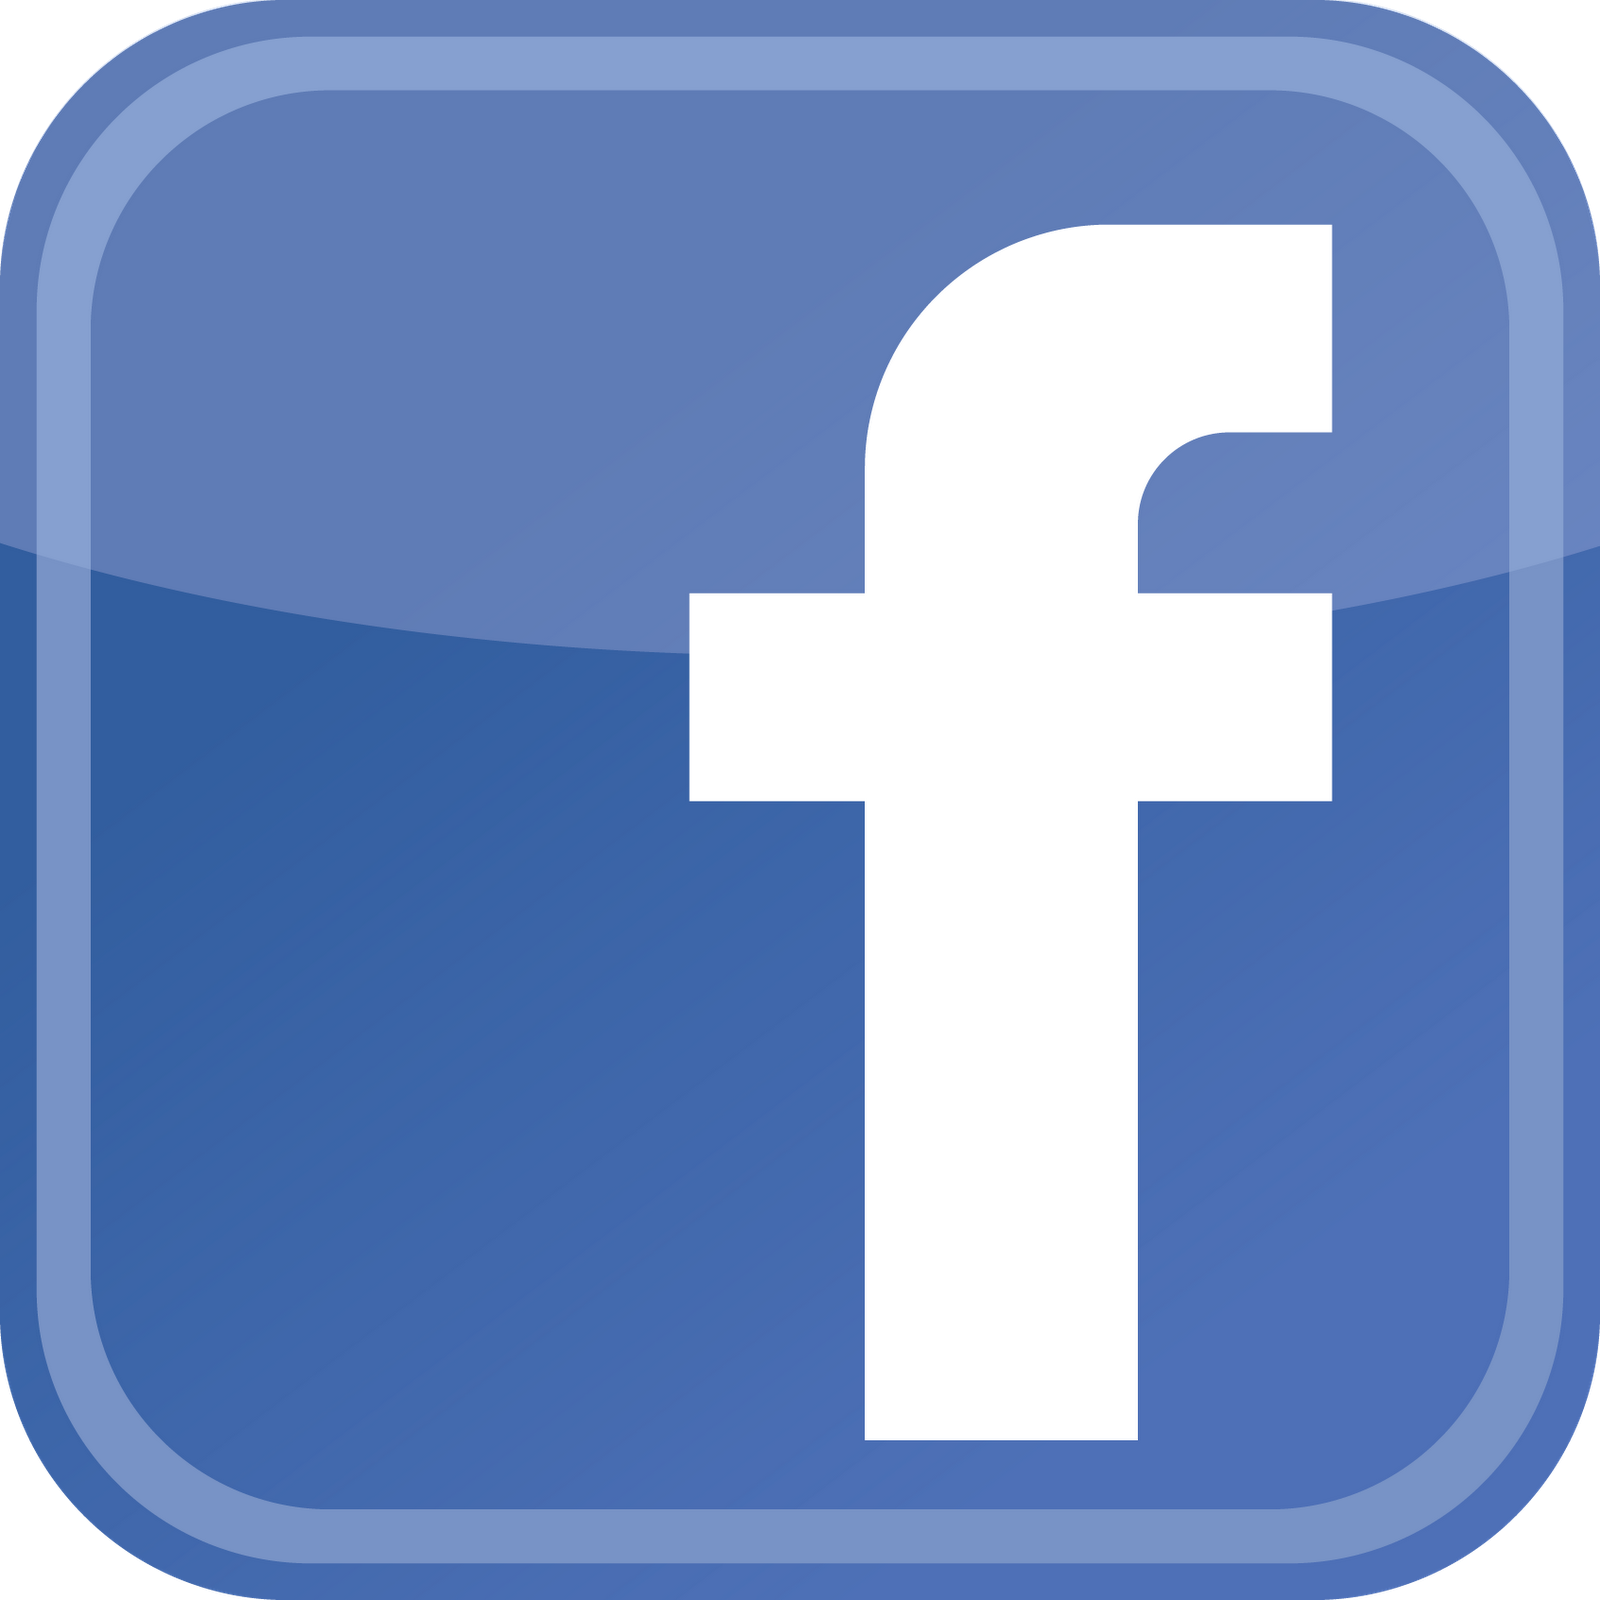 New Facebook Logo